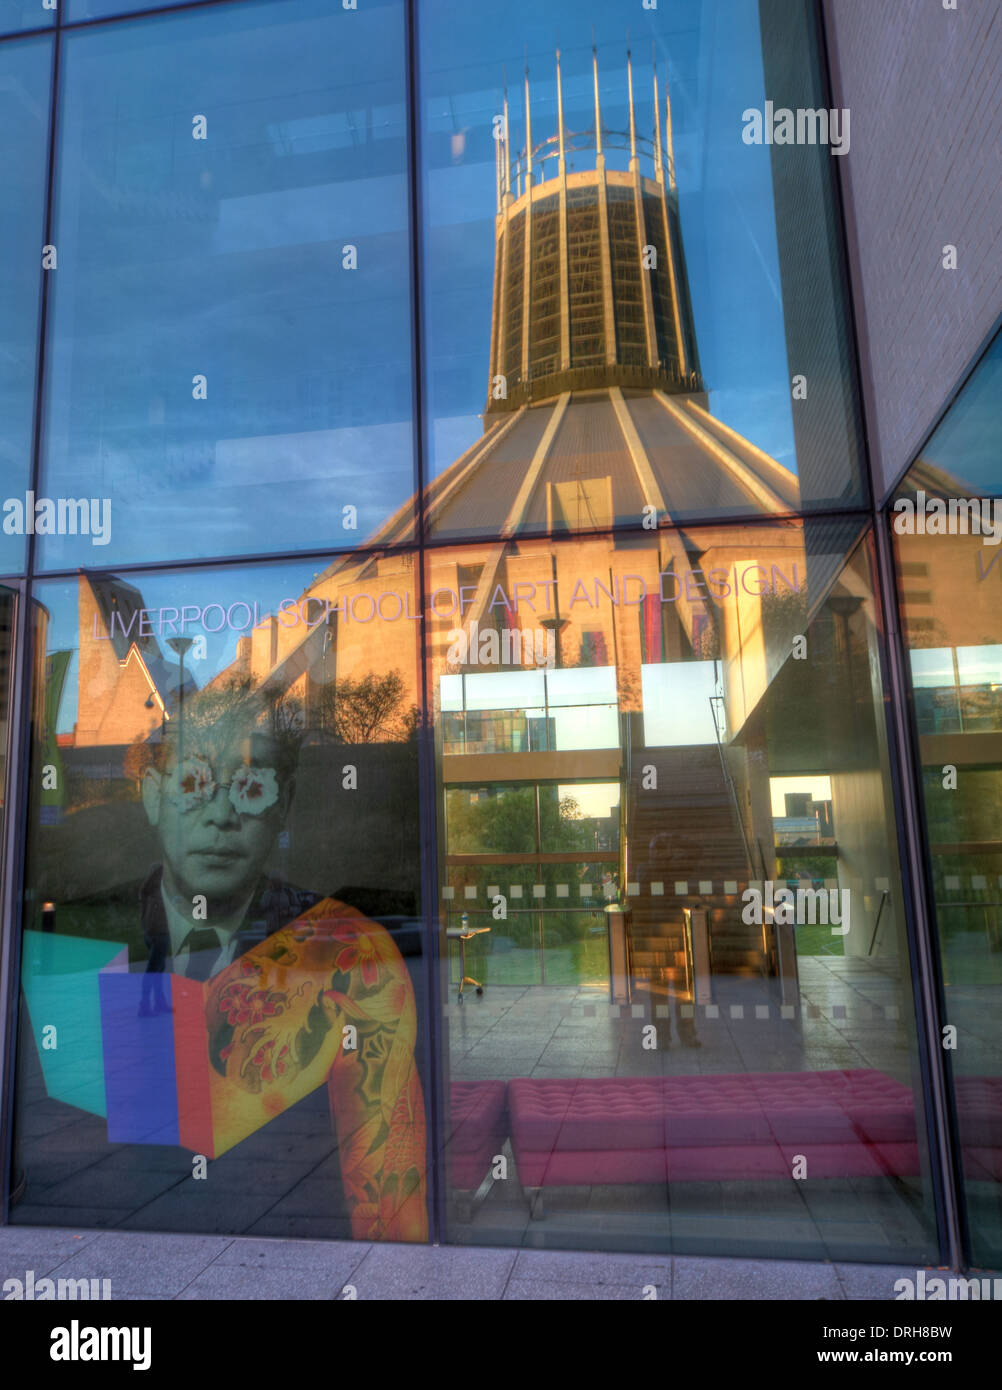 Liverpool cathédrale catholique reflétée dans School of Art, en Angleterre, Royaume-Uni Banque D'Images